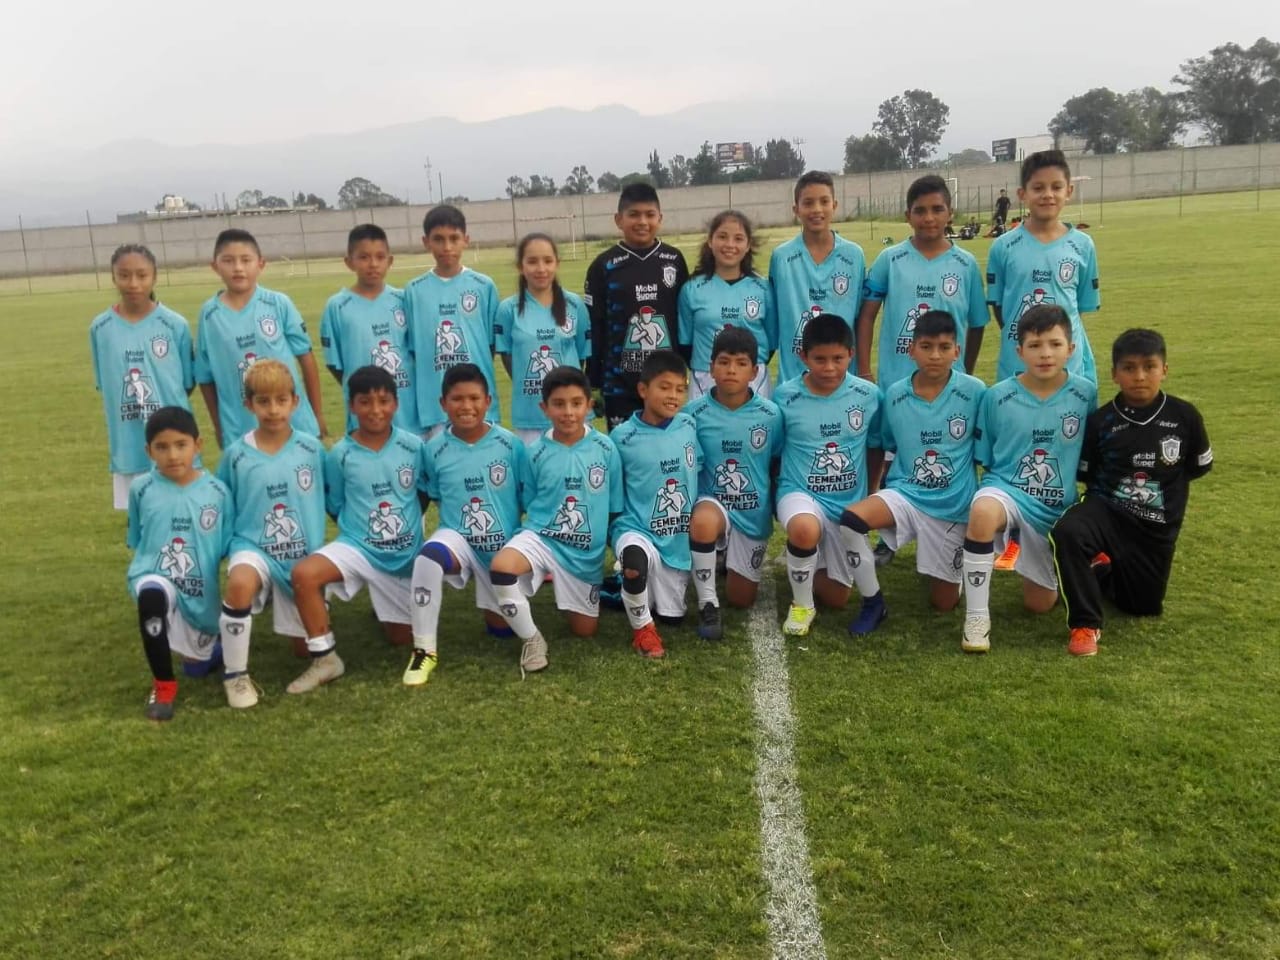 Clases de Futbol en San Rafael Estado de Mexico - Club de Futbol Pachuca |  Journey Sports